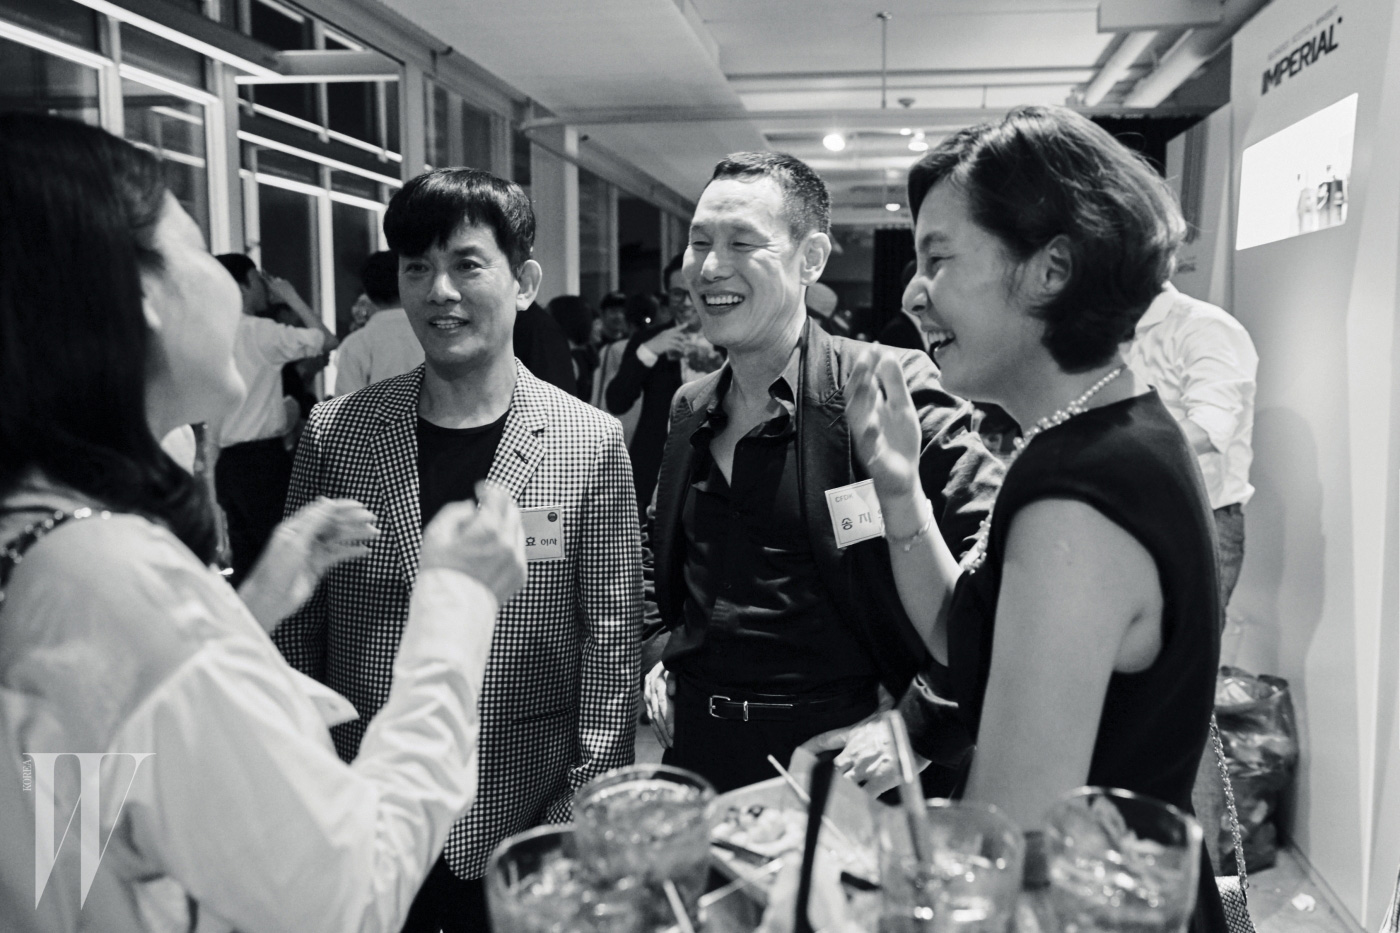 디자이너 장광효, 송지오, 이상봉 등 한국 패션계를 대표하는 디자이너 및 신진 디자이너들이 함께 자리해 교감할 수 있었던 ‘CFDK Night’ 전경.